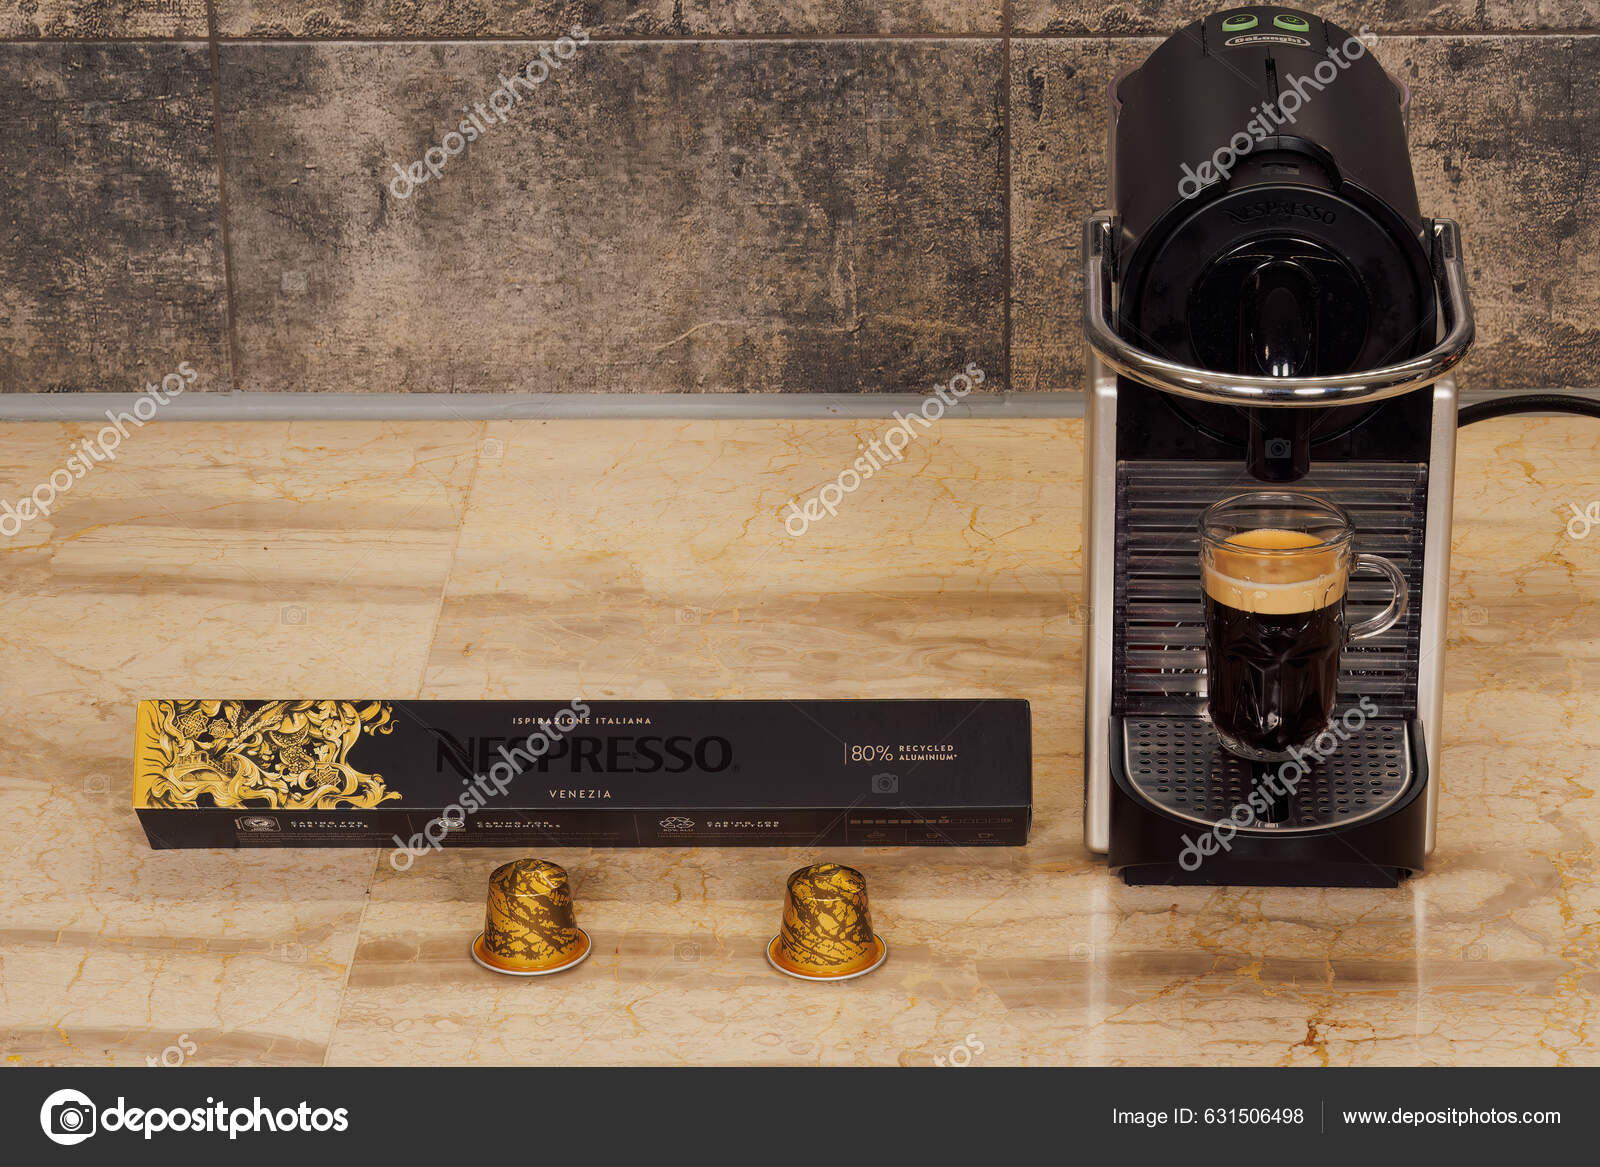 Nespresso Stock Photos, Royalty Free Nespresso Images | Depositphotos